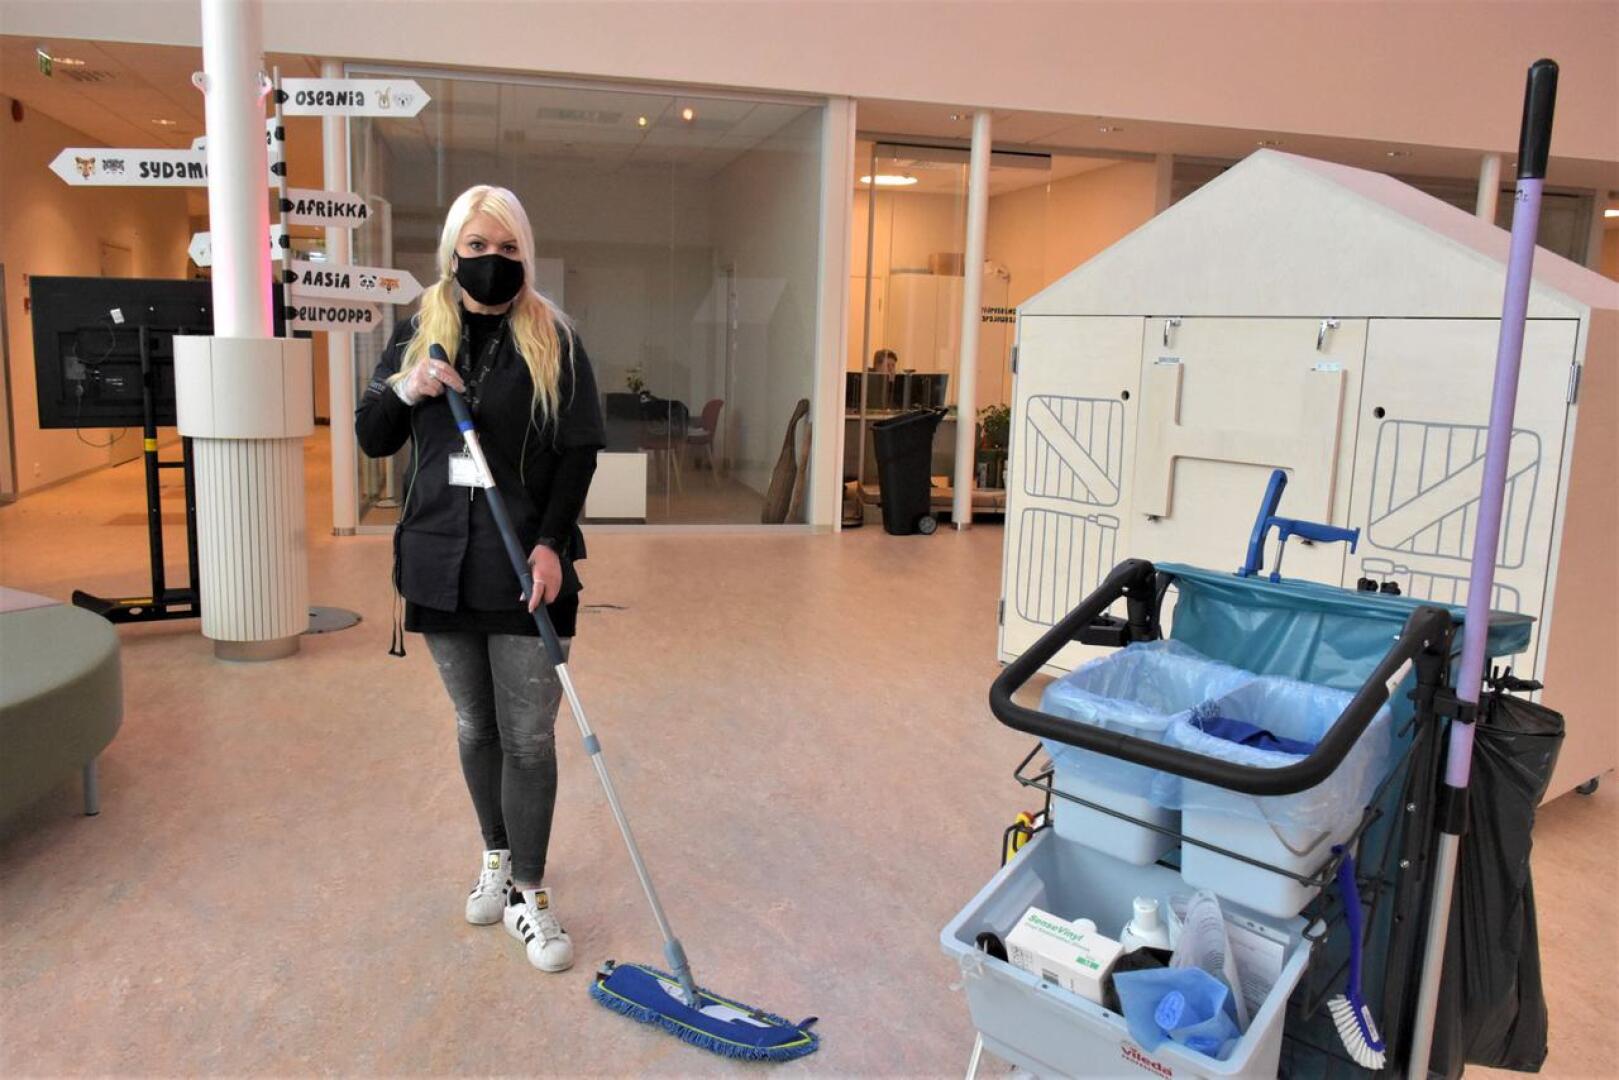 Palveluohjaaja Marja Karjalainen tuurailee usein Alerten siivouskohteissa, tällä kertaa päiväkoti Almassa. Alertella on kaikkiaan noin 130 siivojaa, ja uusia alasta kiinnostuneita tarvitaan nyt ja jatkossa.